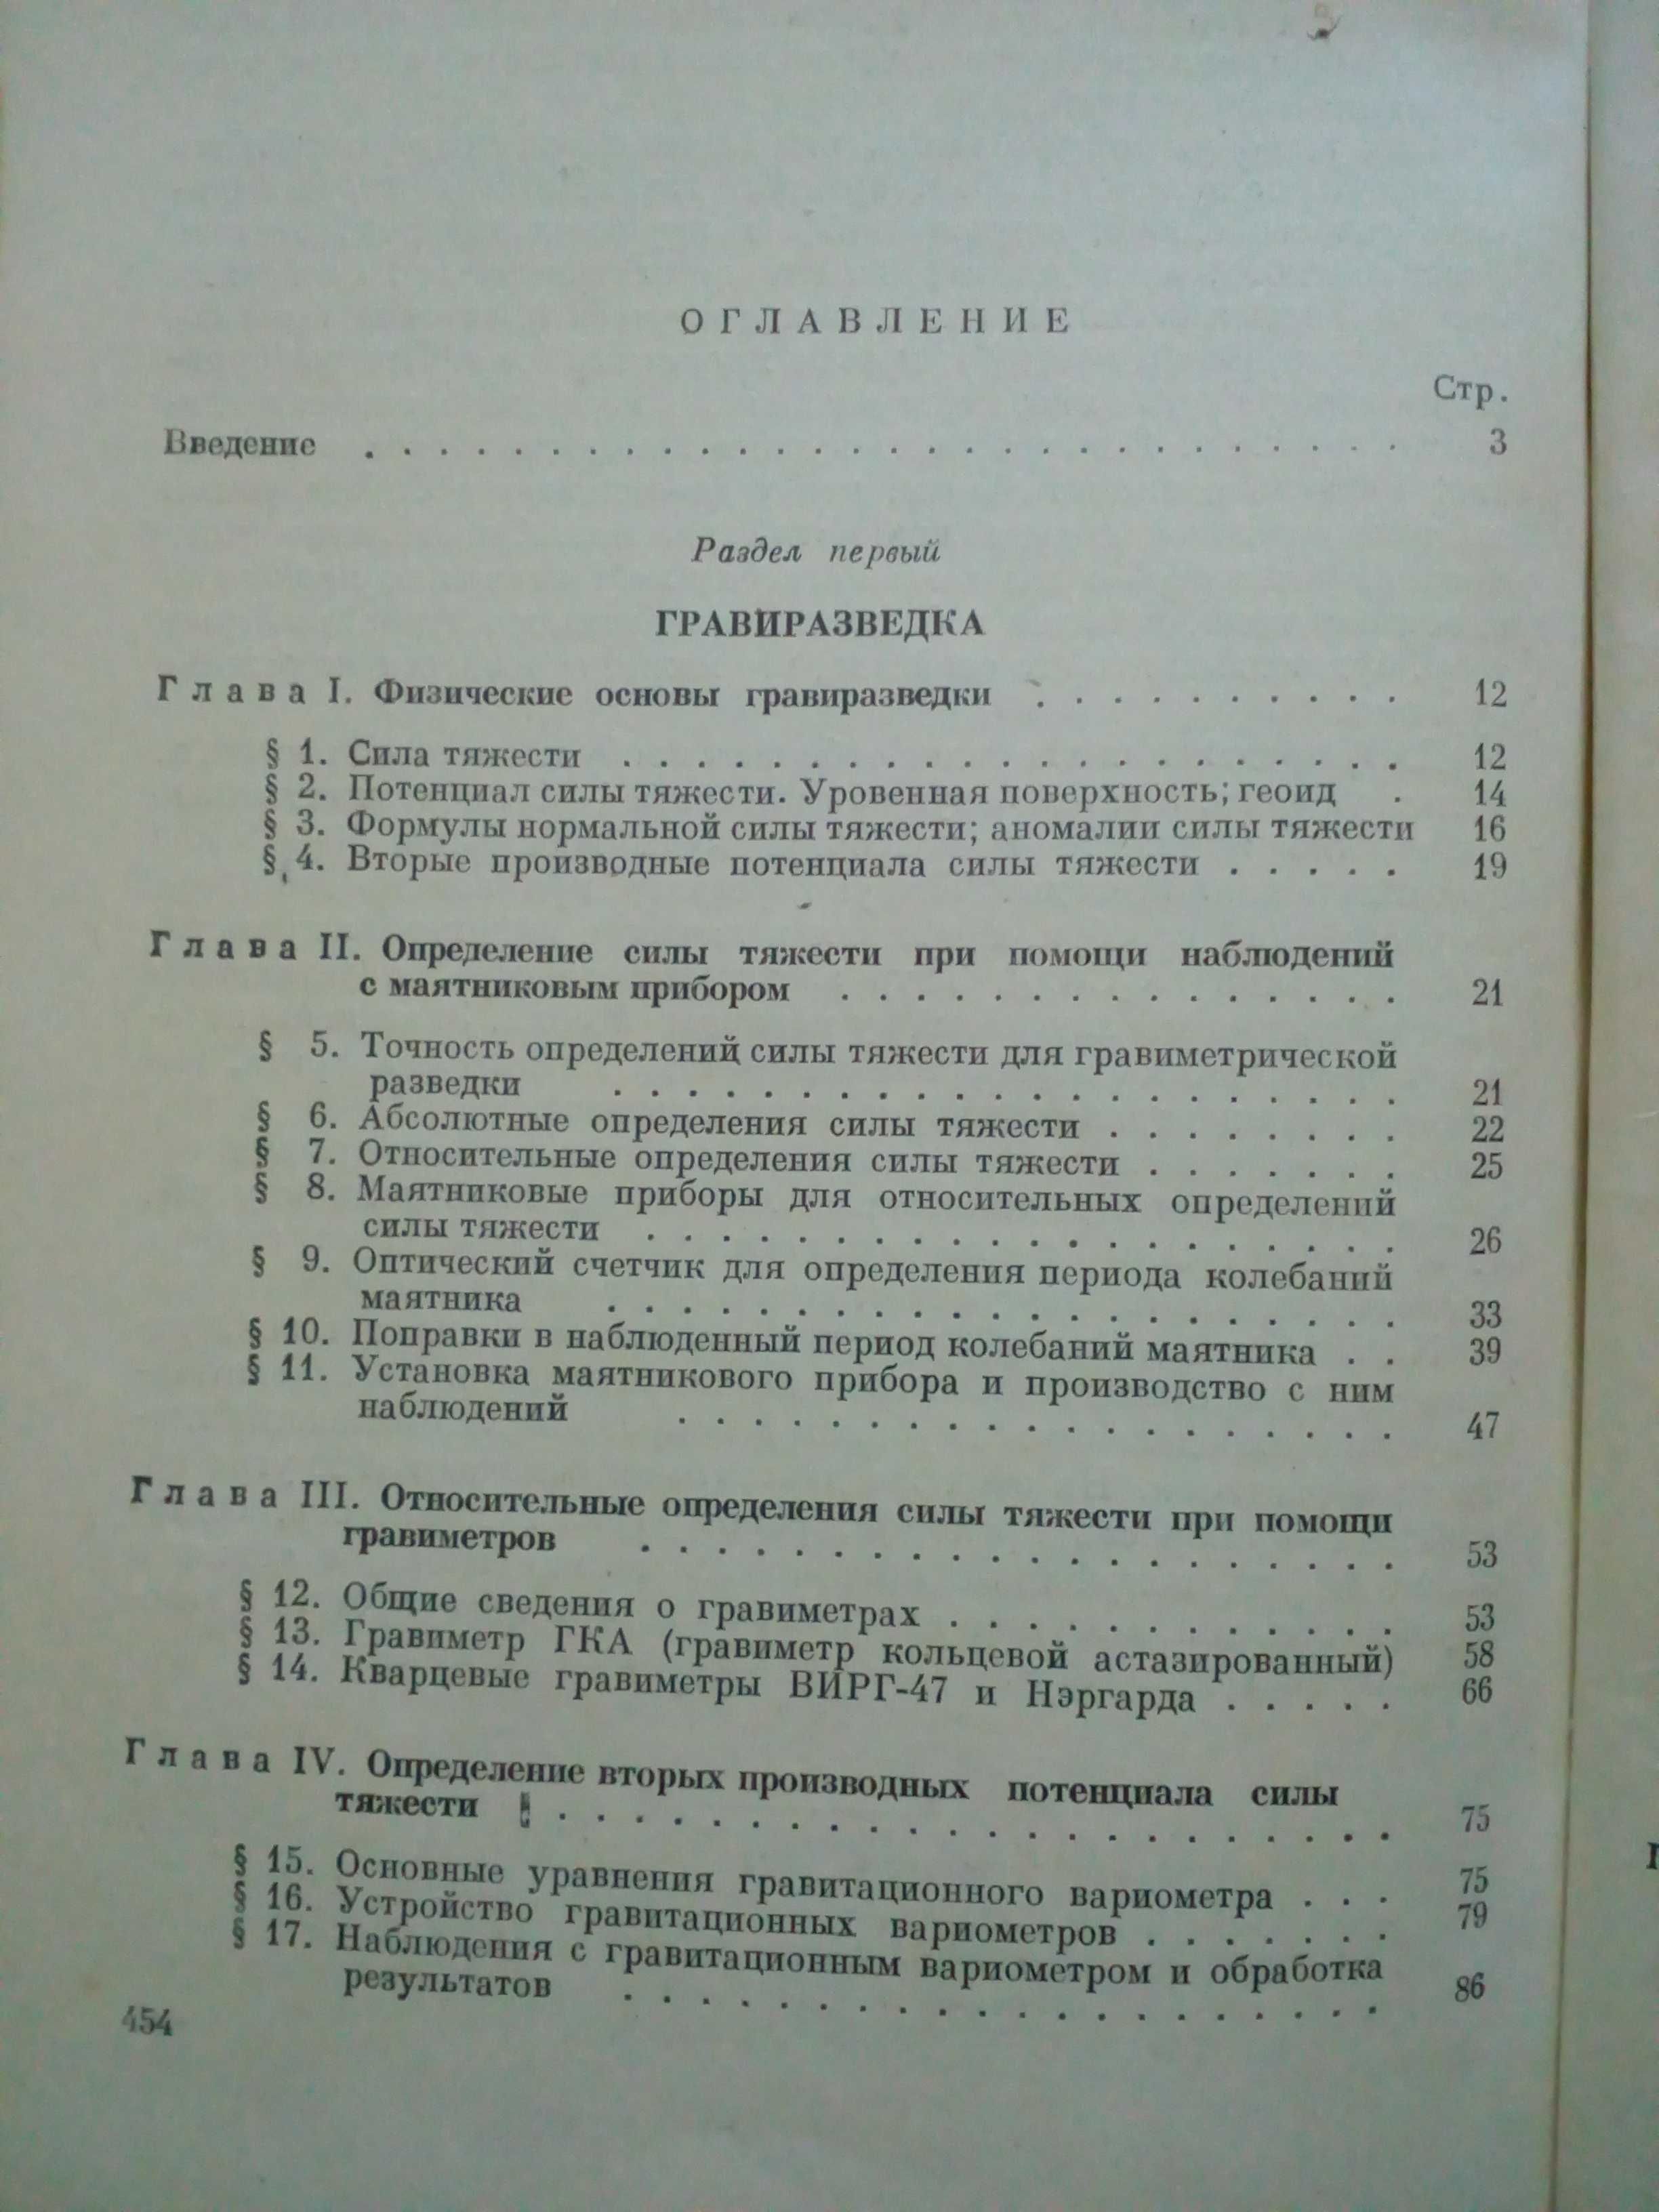 "Общий курс геофизических методов разведки"1954г.